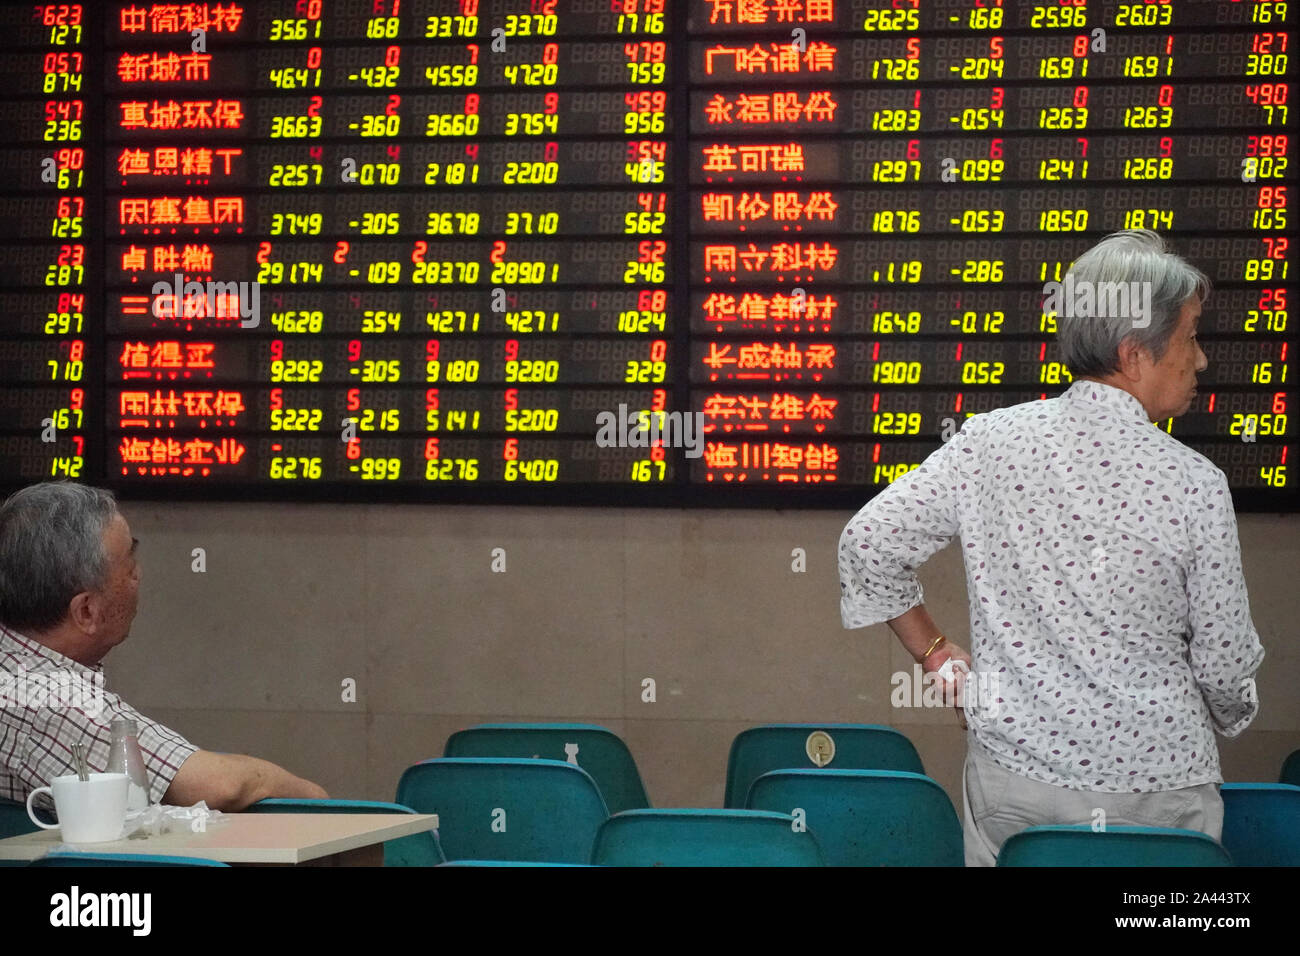 Zwei ältere Personen beobachten Sie die Börse mit einem Makler Unternehmen in Nanjing in der ostchinesischen Provinz Jiangsu, 26. August 2019. Stockfoto